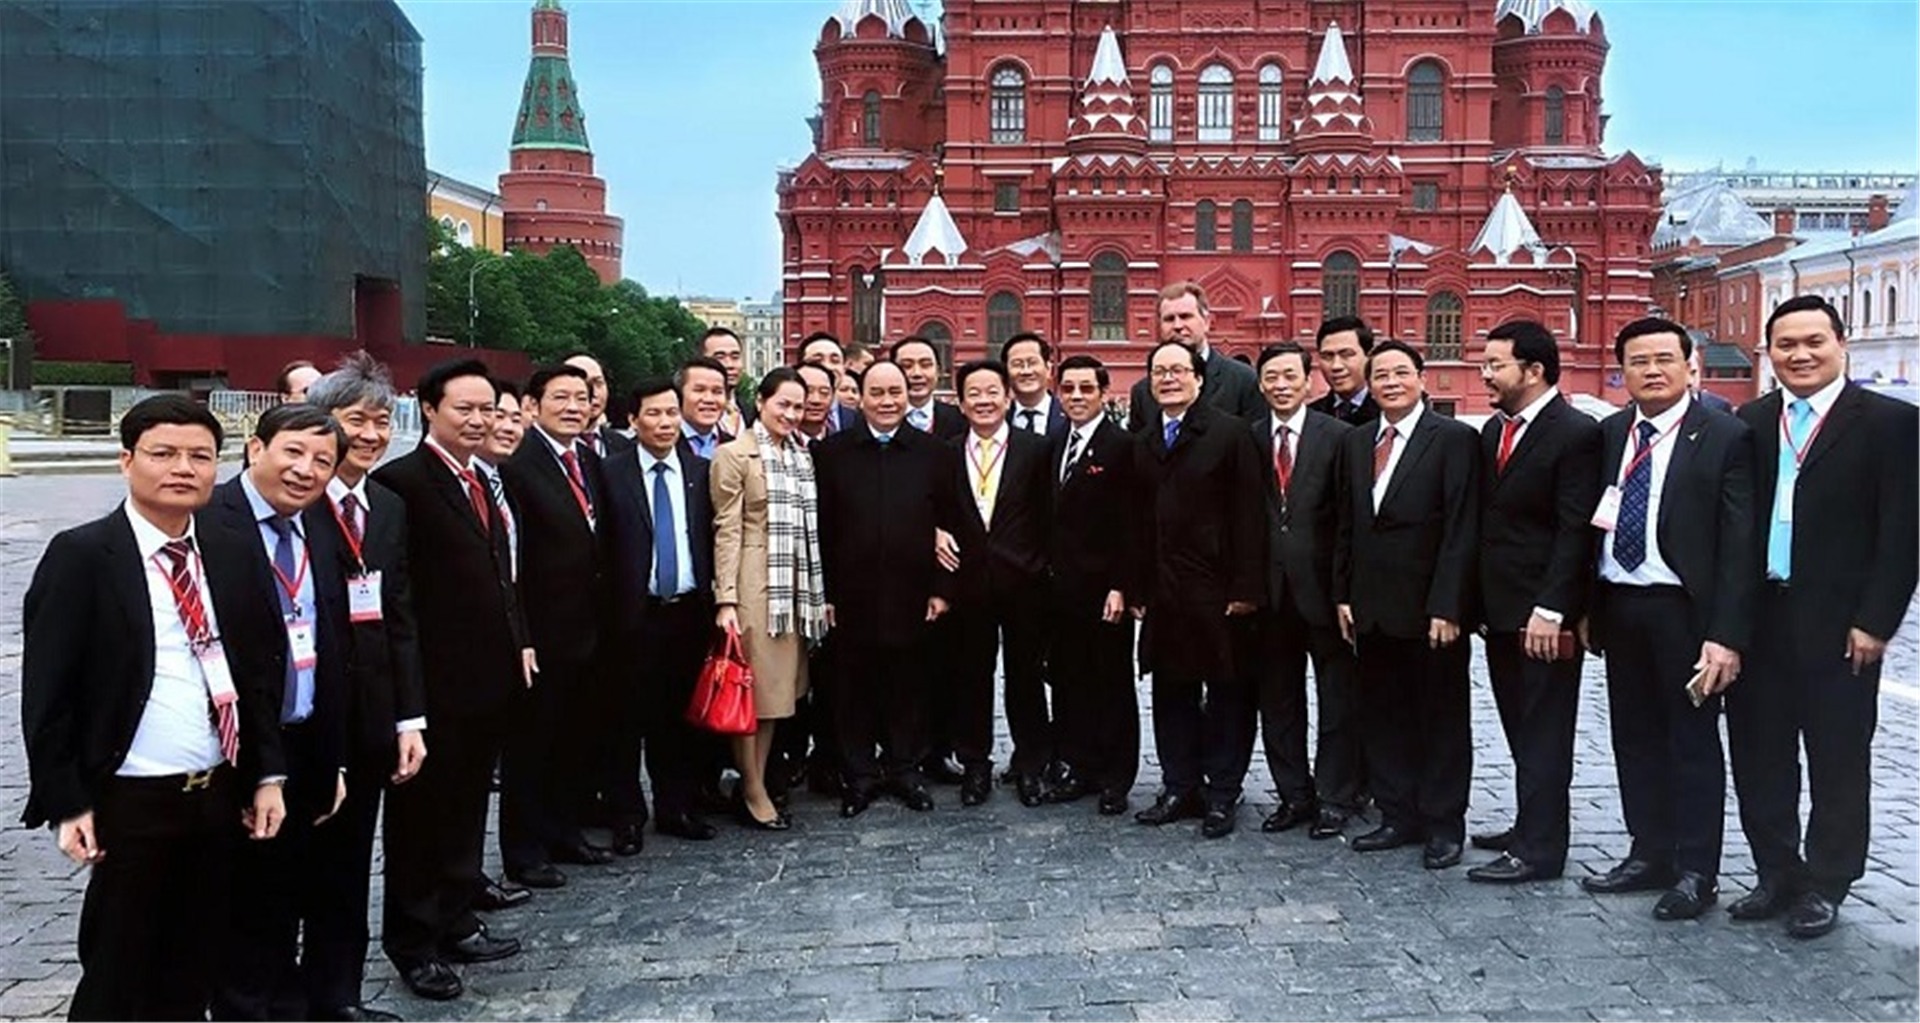 Nguyen Xuan Phuc 총리와 함께 러시아를 방문한 베트남 사업가 대표단